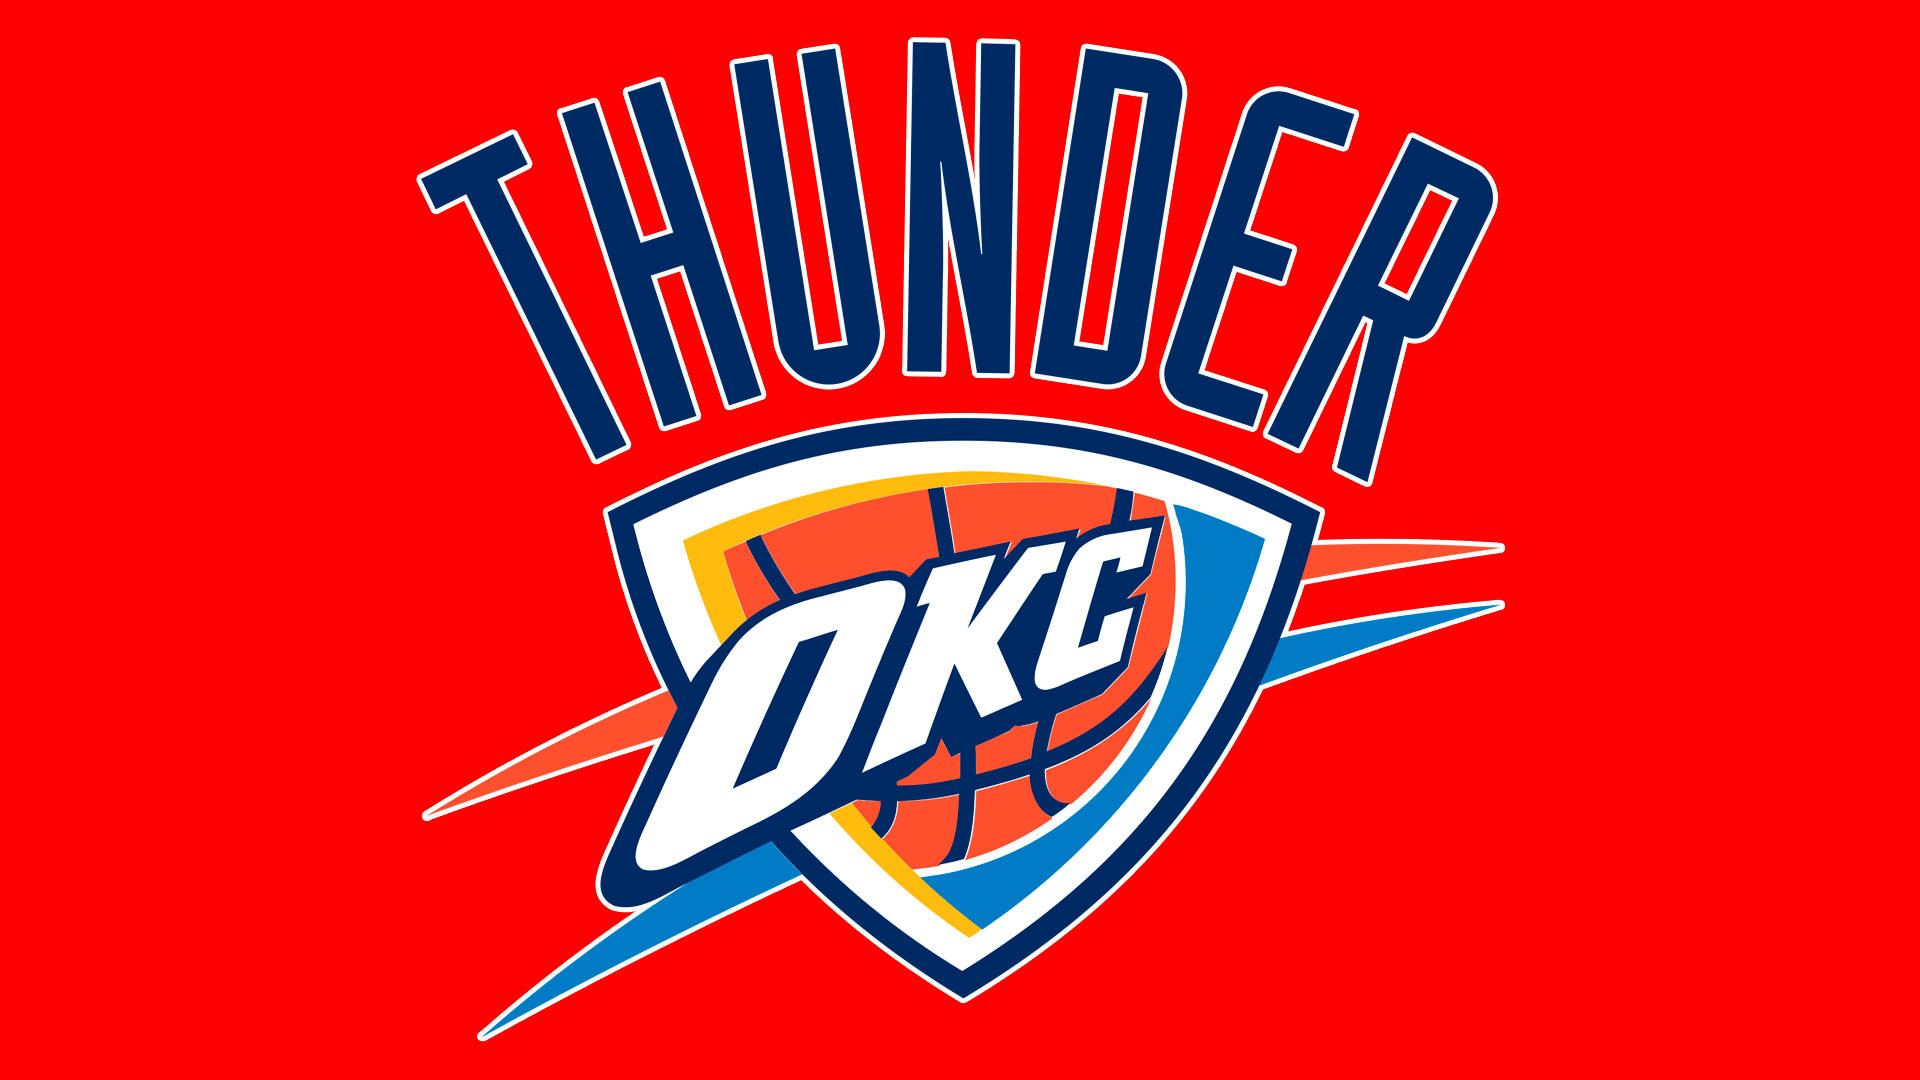 Logotipode Oklahoma City Thunder En Fondo Rojo. Fondo de pantalla